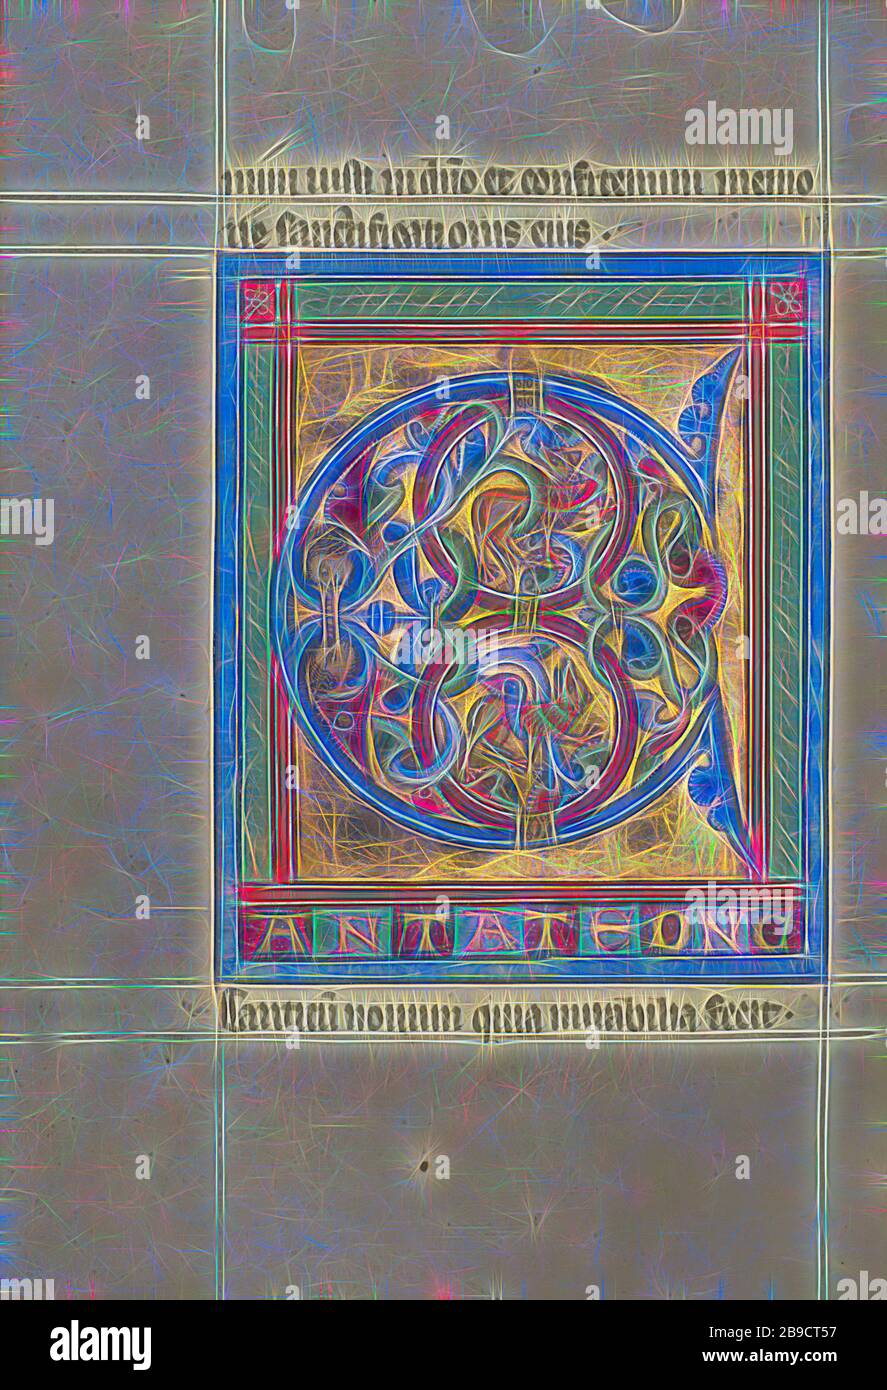 Initiale C: Lions et deux têtes mâles, Würzburg, Allemagne, environ 1240 - 1250, couleurs de Tempera, feuille d'or, et feuille d'argent sur parchemin, feuille: 22.7 x 15.7 cm (8 15,16 x 6 3,16 po, repensée par Gibon, conception de glawing chaud et gai de lumière. L'art classique réinventé avec une touche moderne. La photographie inspirée du futurisme, qui embrasse l'énergie dynamique de la technologie moderne, du mouvement, de la vitesse et révolutionne la culture. Banque D'Images